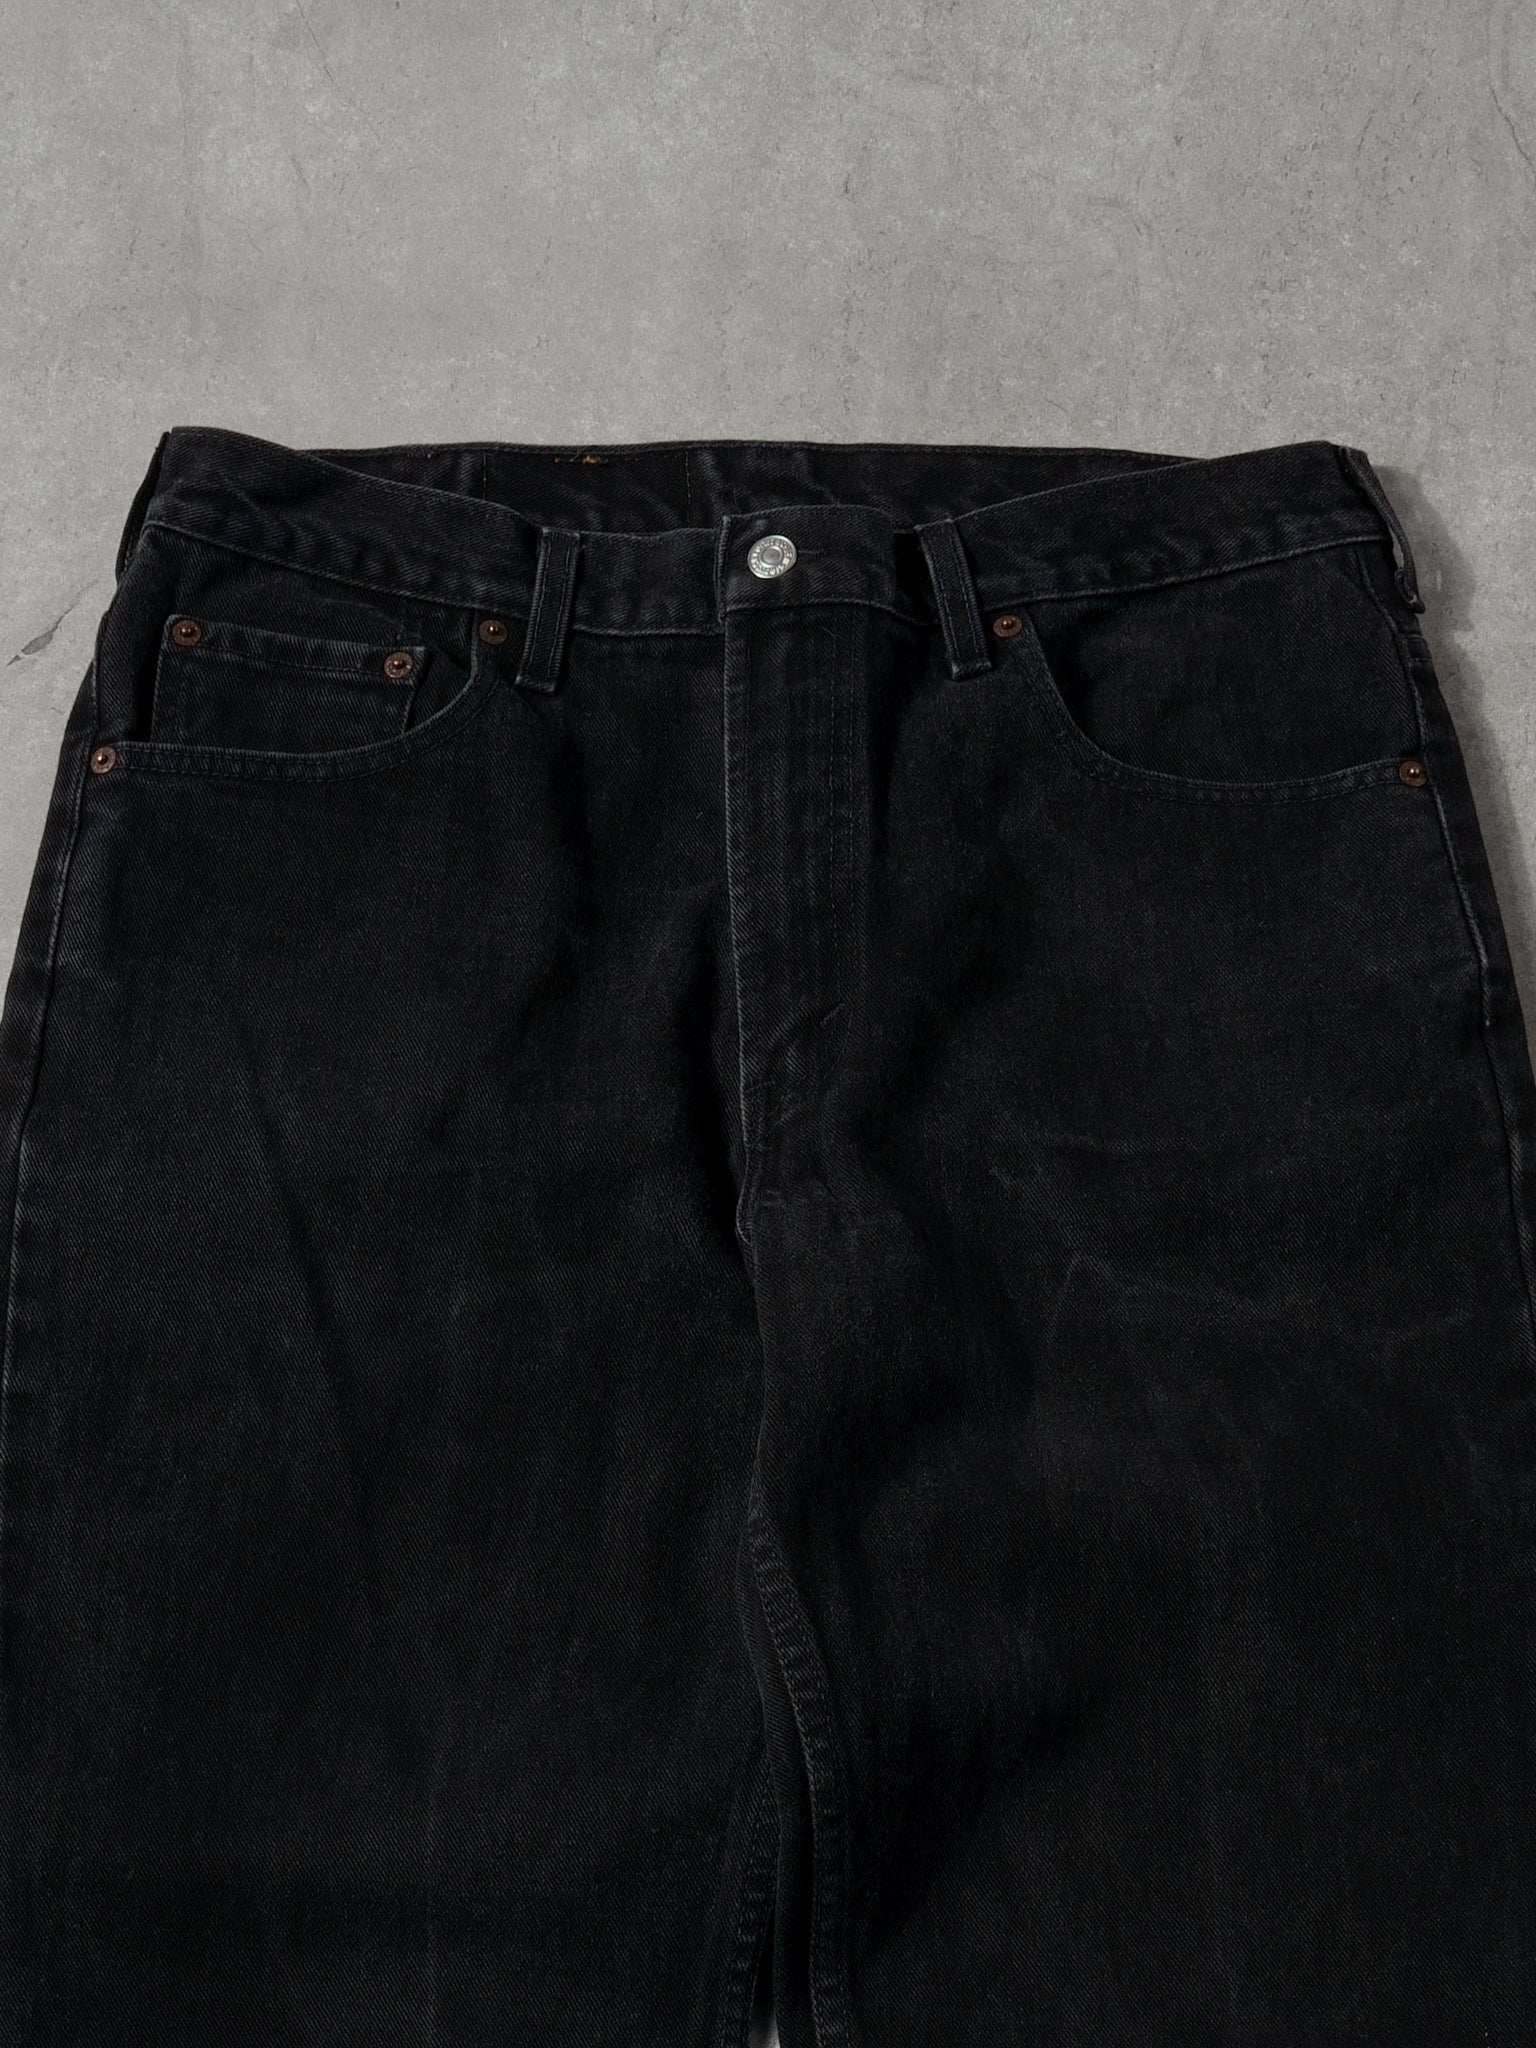 Vintage 90s Black Levi's Denim Jeans (34x28)